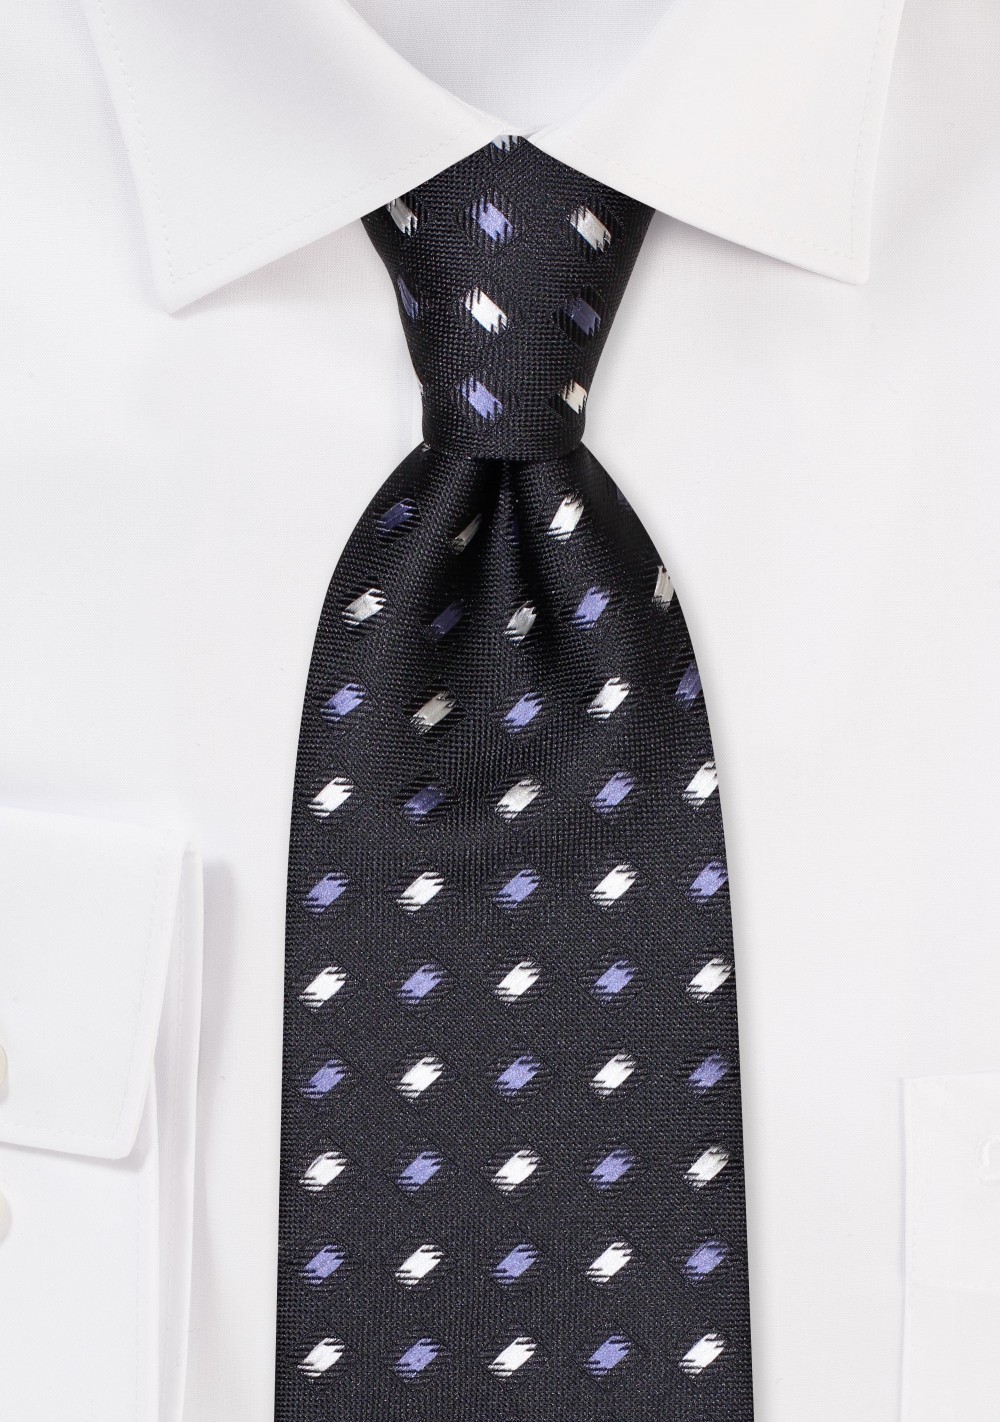 Designer Check Tie in Silver, Gray, and Black